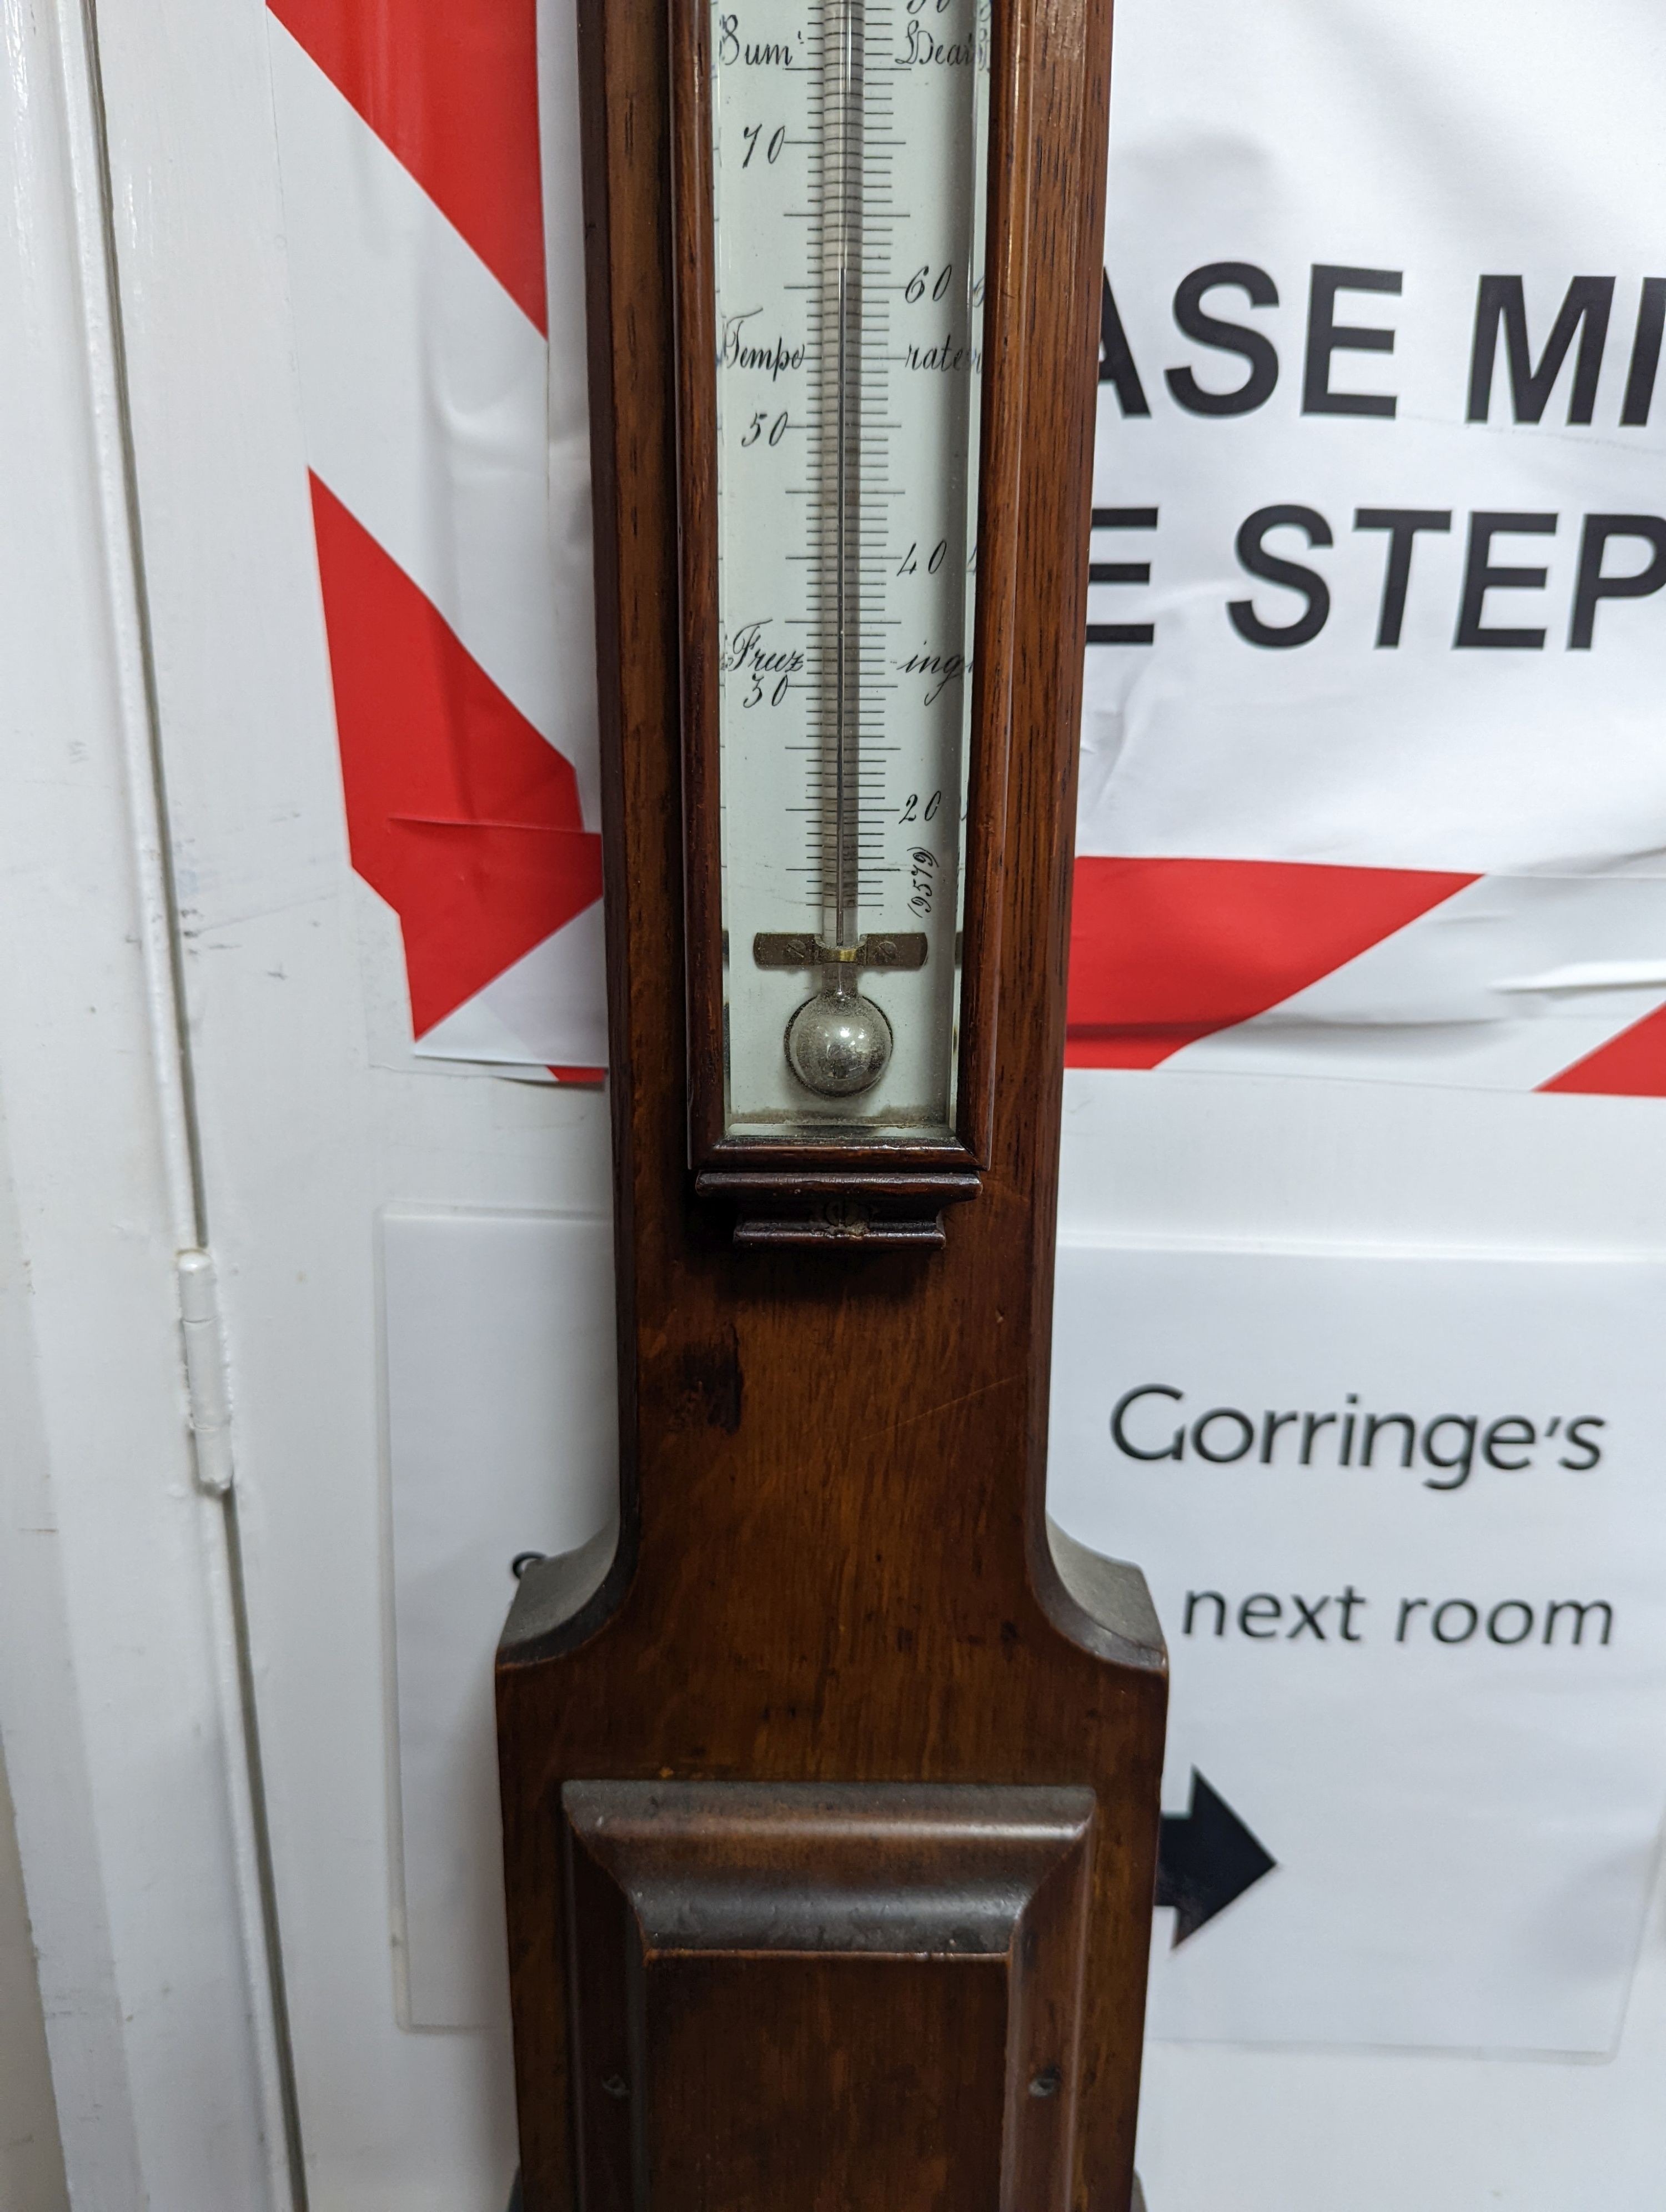 A Victorian Negretti & Zambra oak cased stick barometer and thermometer, height 103cm